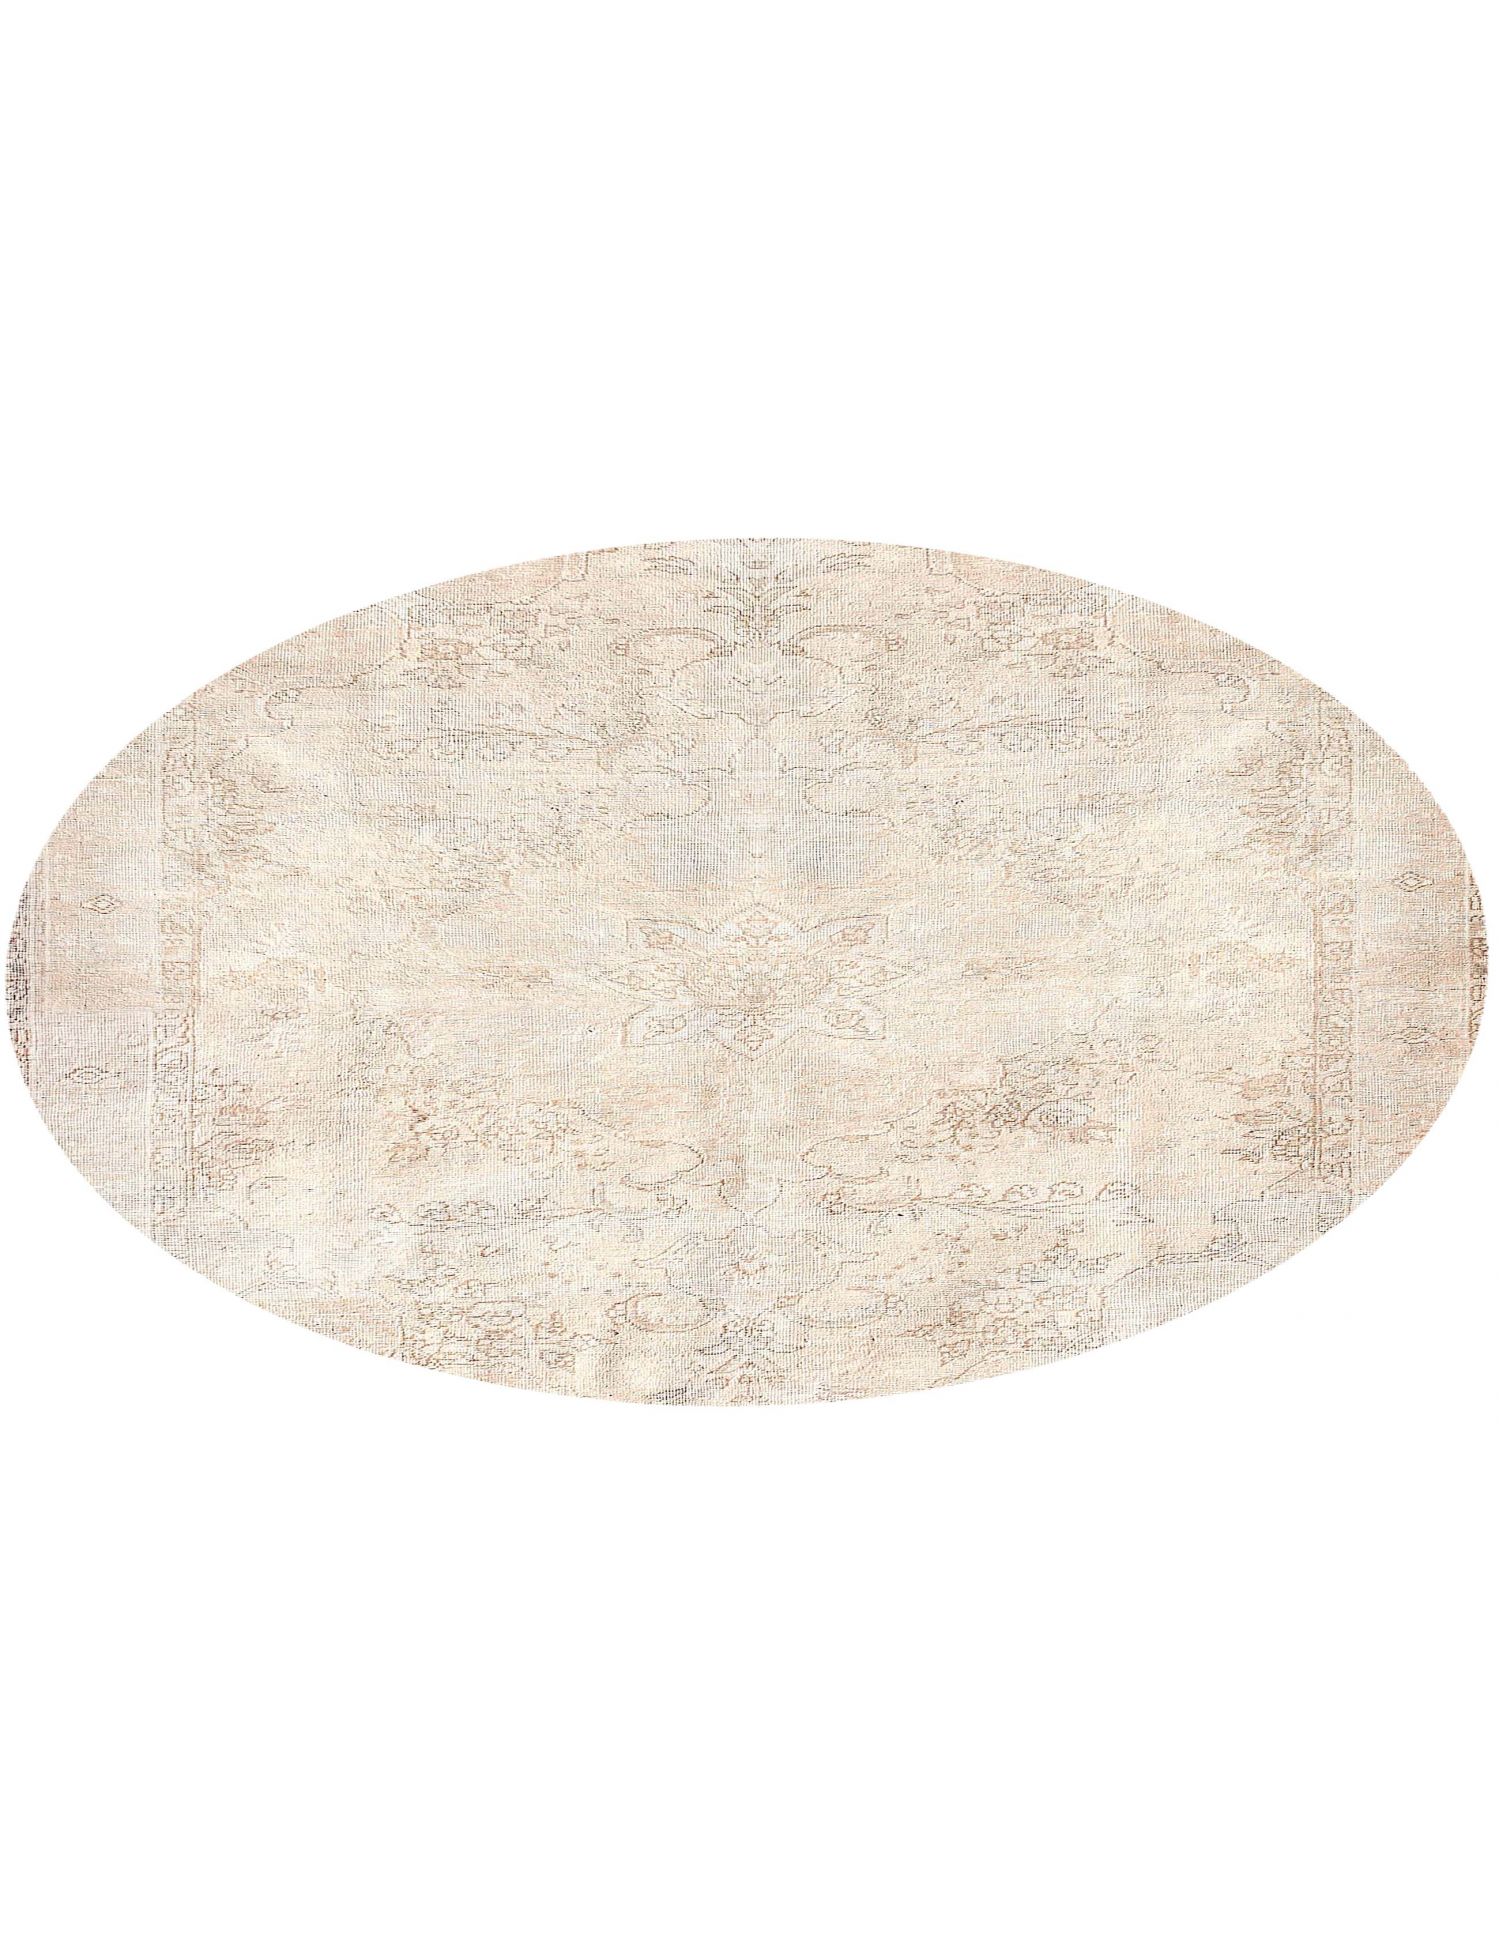 Rund  Vintage Teppich  beige <br/>200 x 200 cm